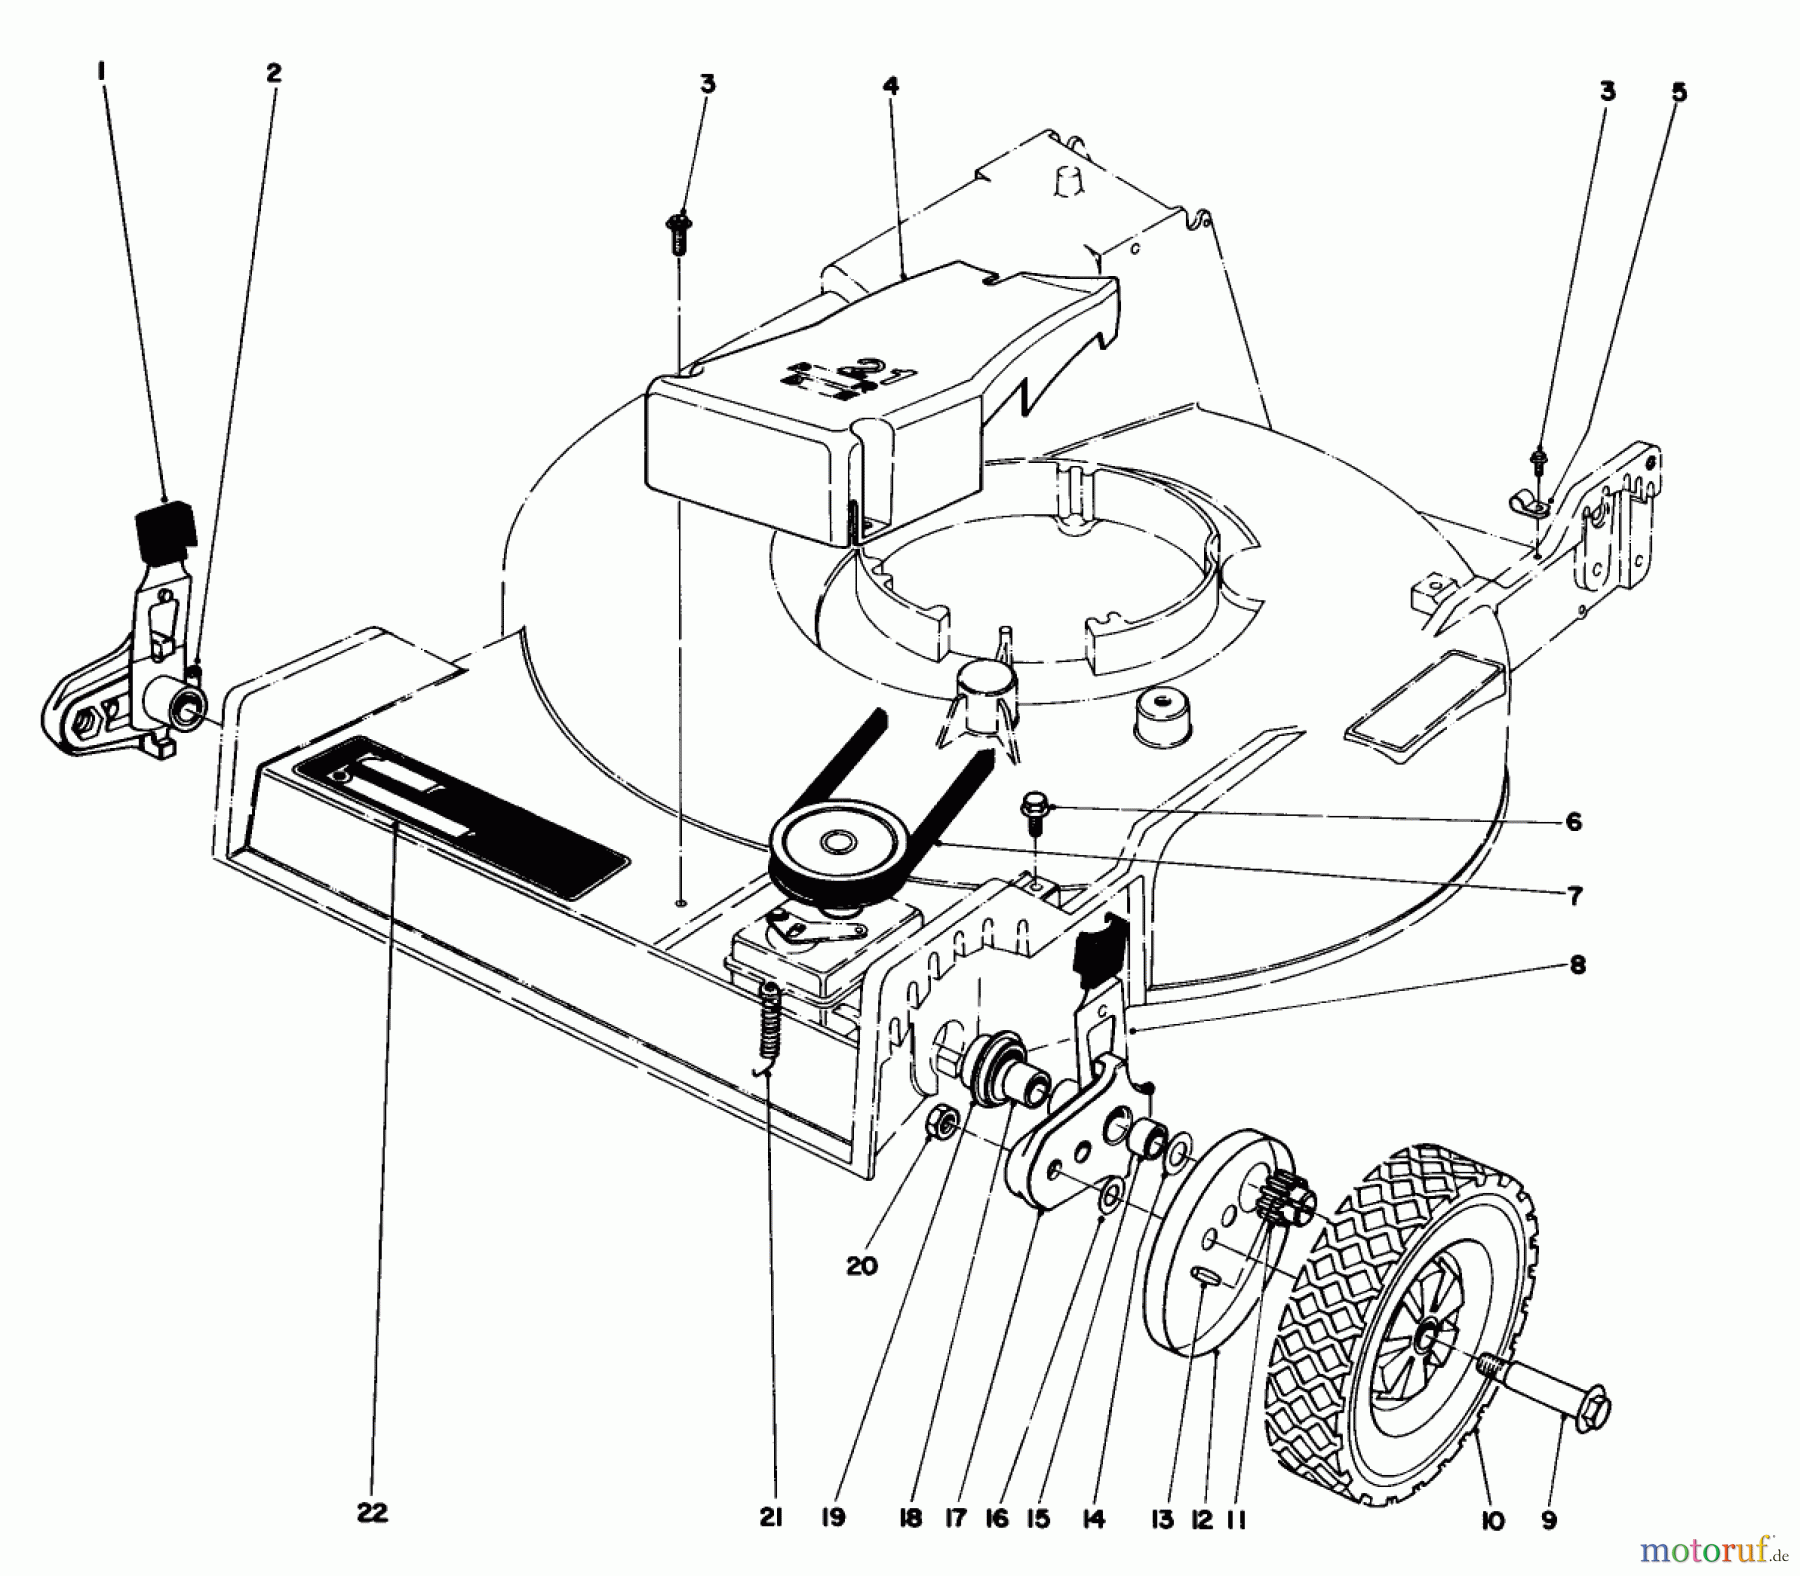  Toro Neu Mowers, Walk-Behind Seite 1 20770 - Toro Lawnmower, 1982 (2000001-2999999) FRONT WHEEL & PIVOT ARM ASSEMBLY